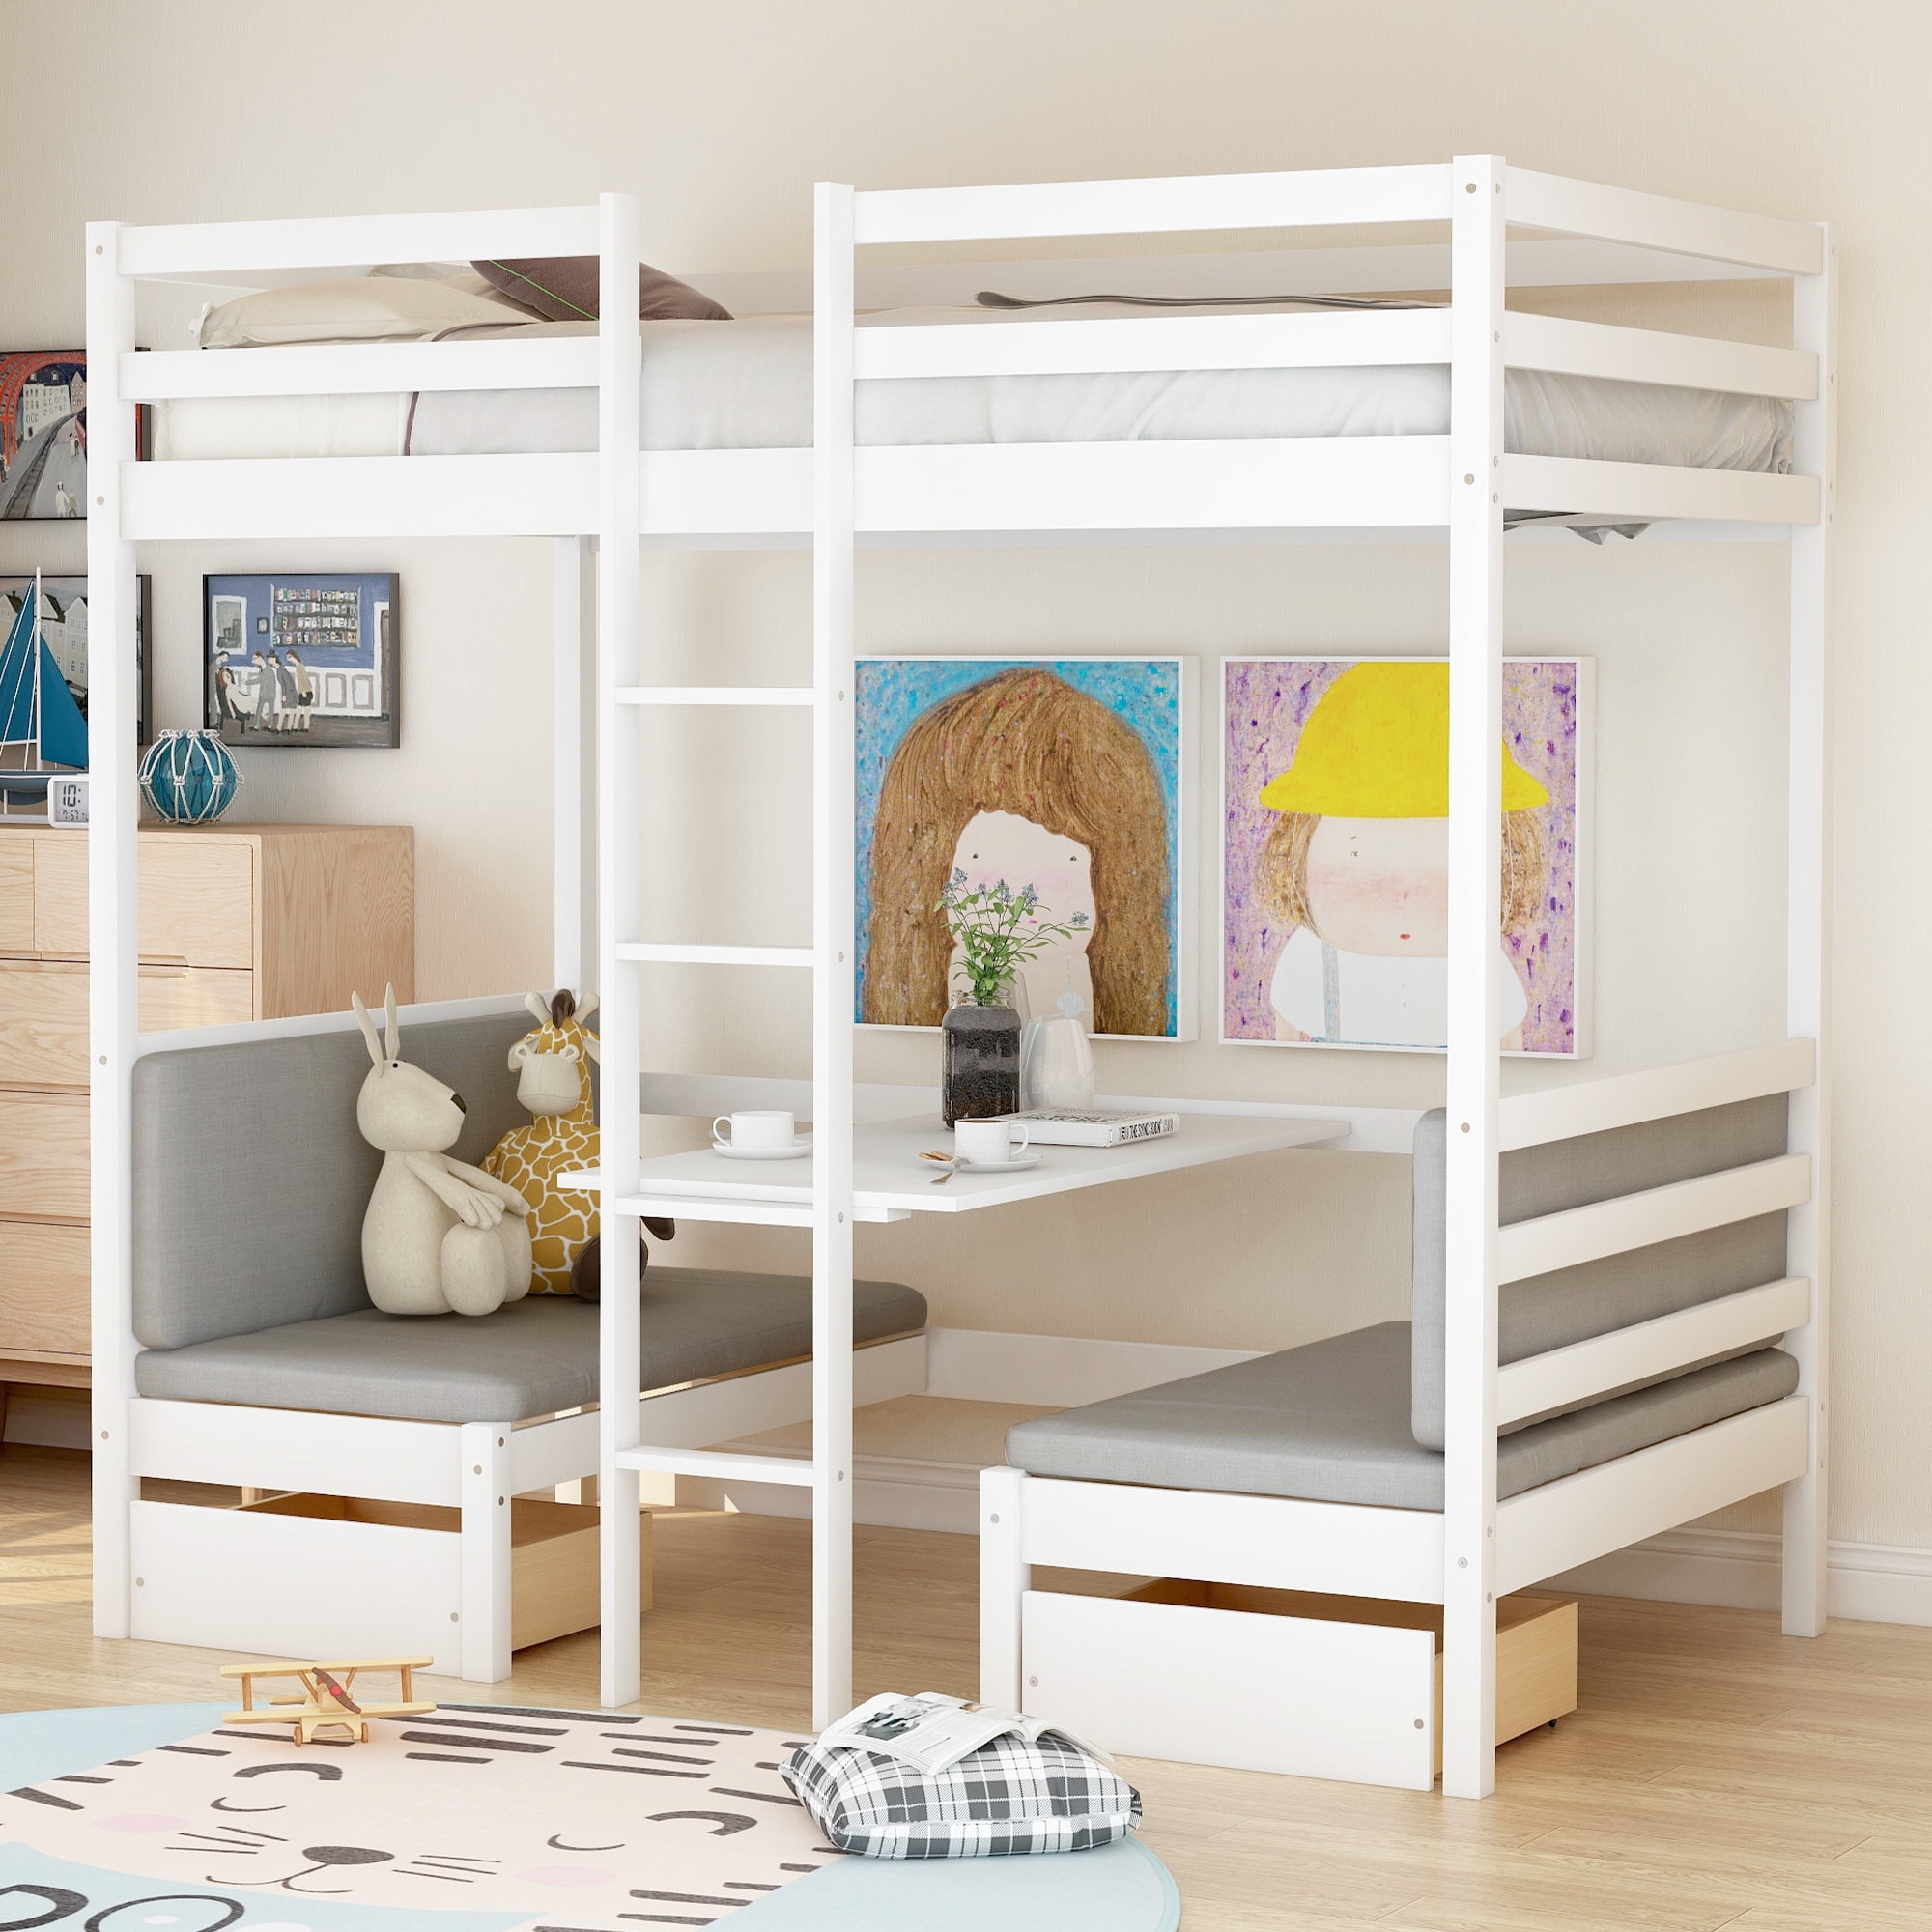 Bunk Beds For Kids Full Size Bunked Bed Frame Loft Girls Boys Bedroom Furniture 